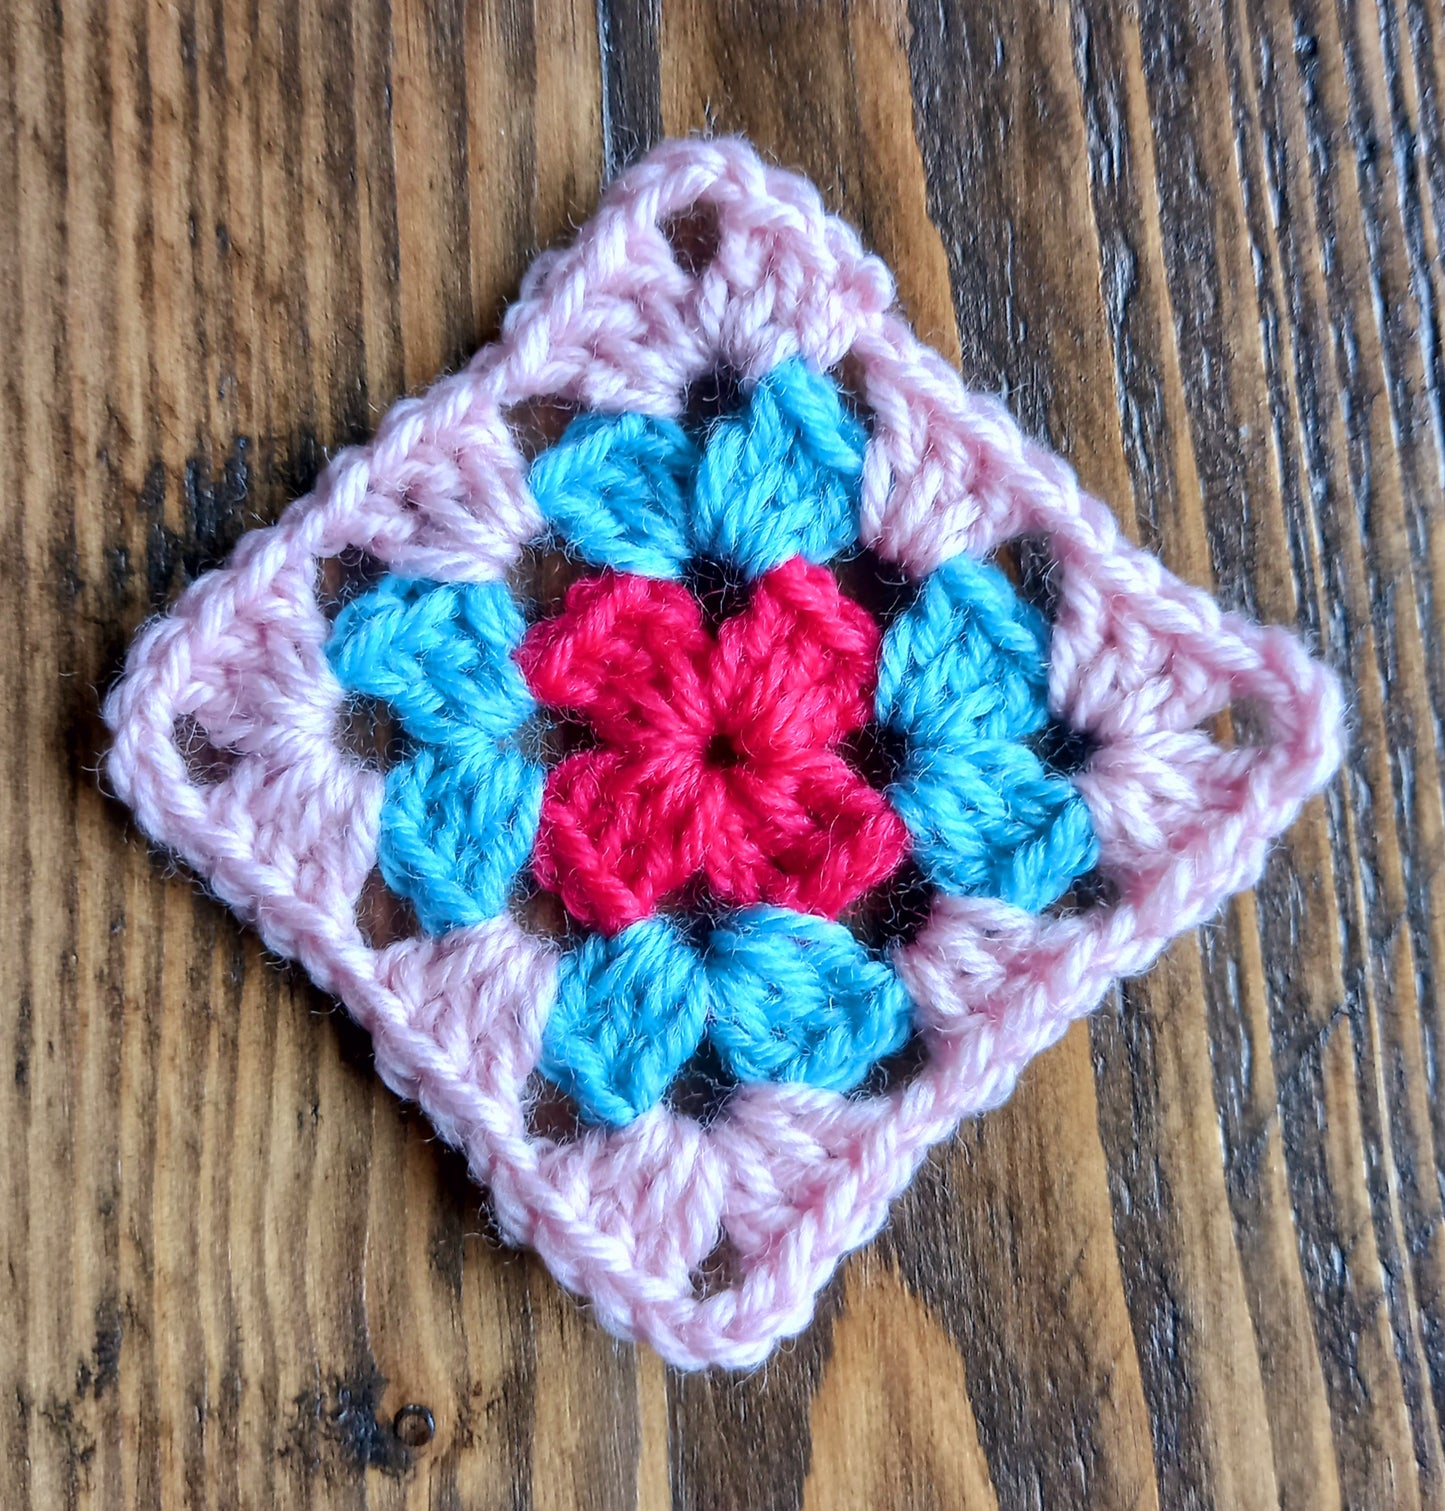 Crochet Taster Session